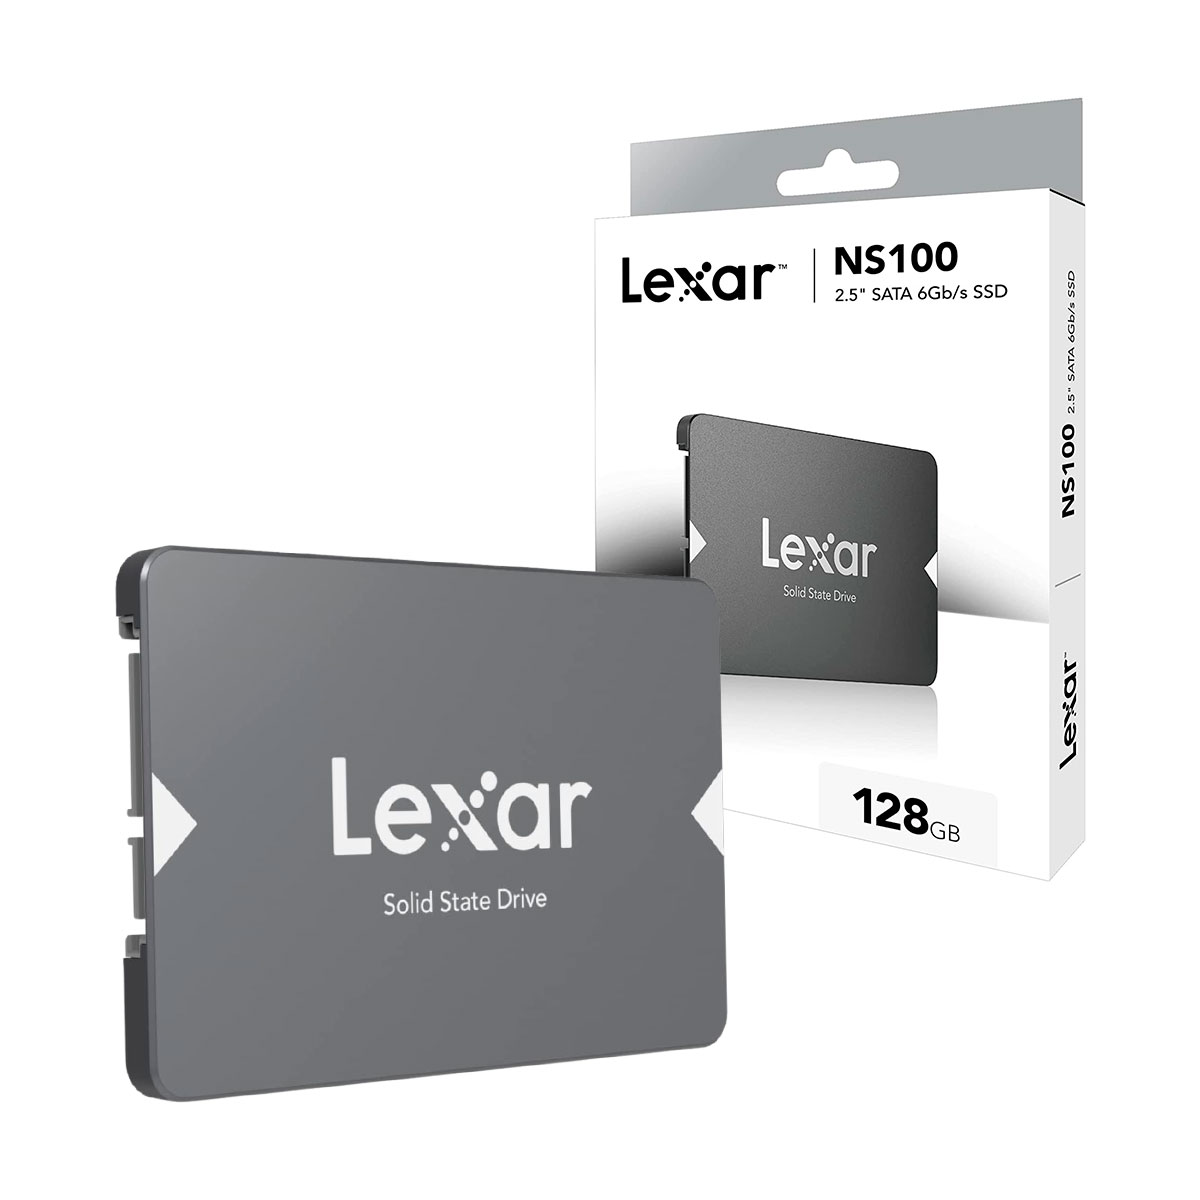 SSD 128GB Lexar NS100, SATA III 6Gb/s, Leitura 520MB/s - LNS100-128RB